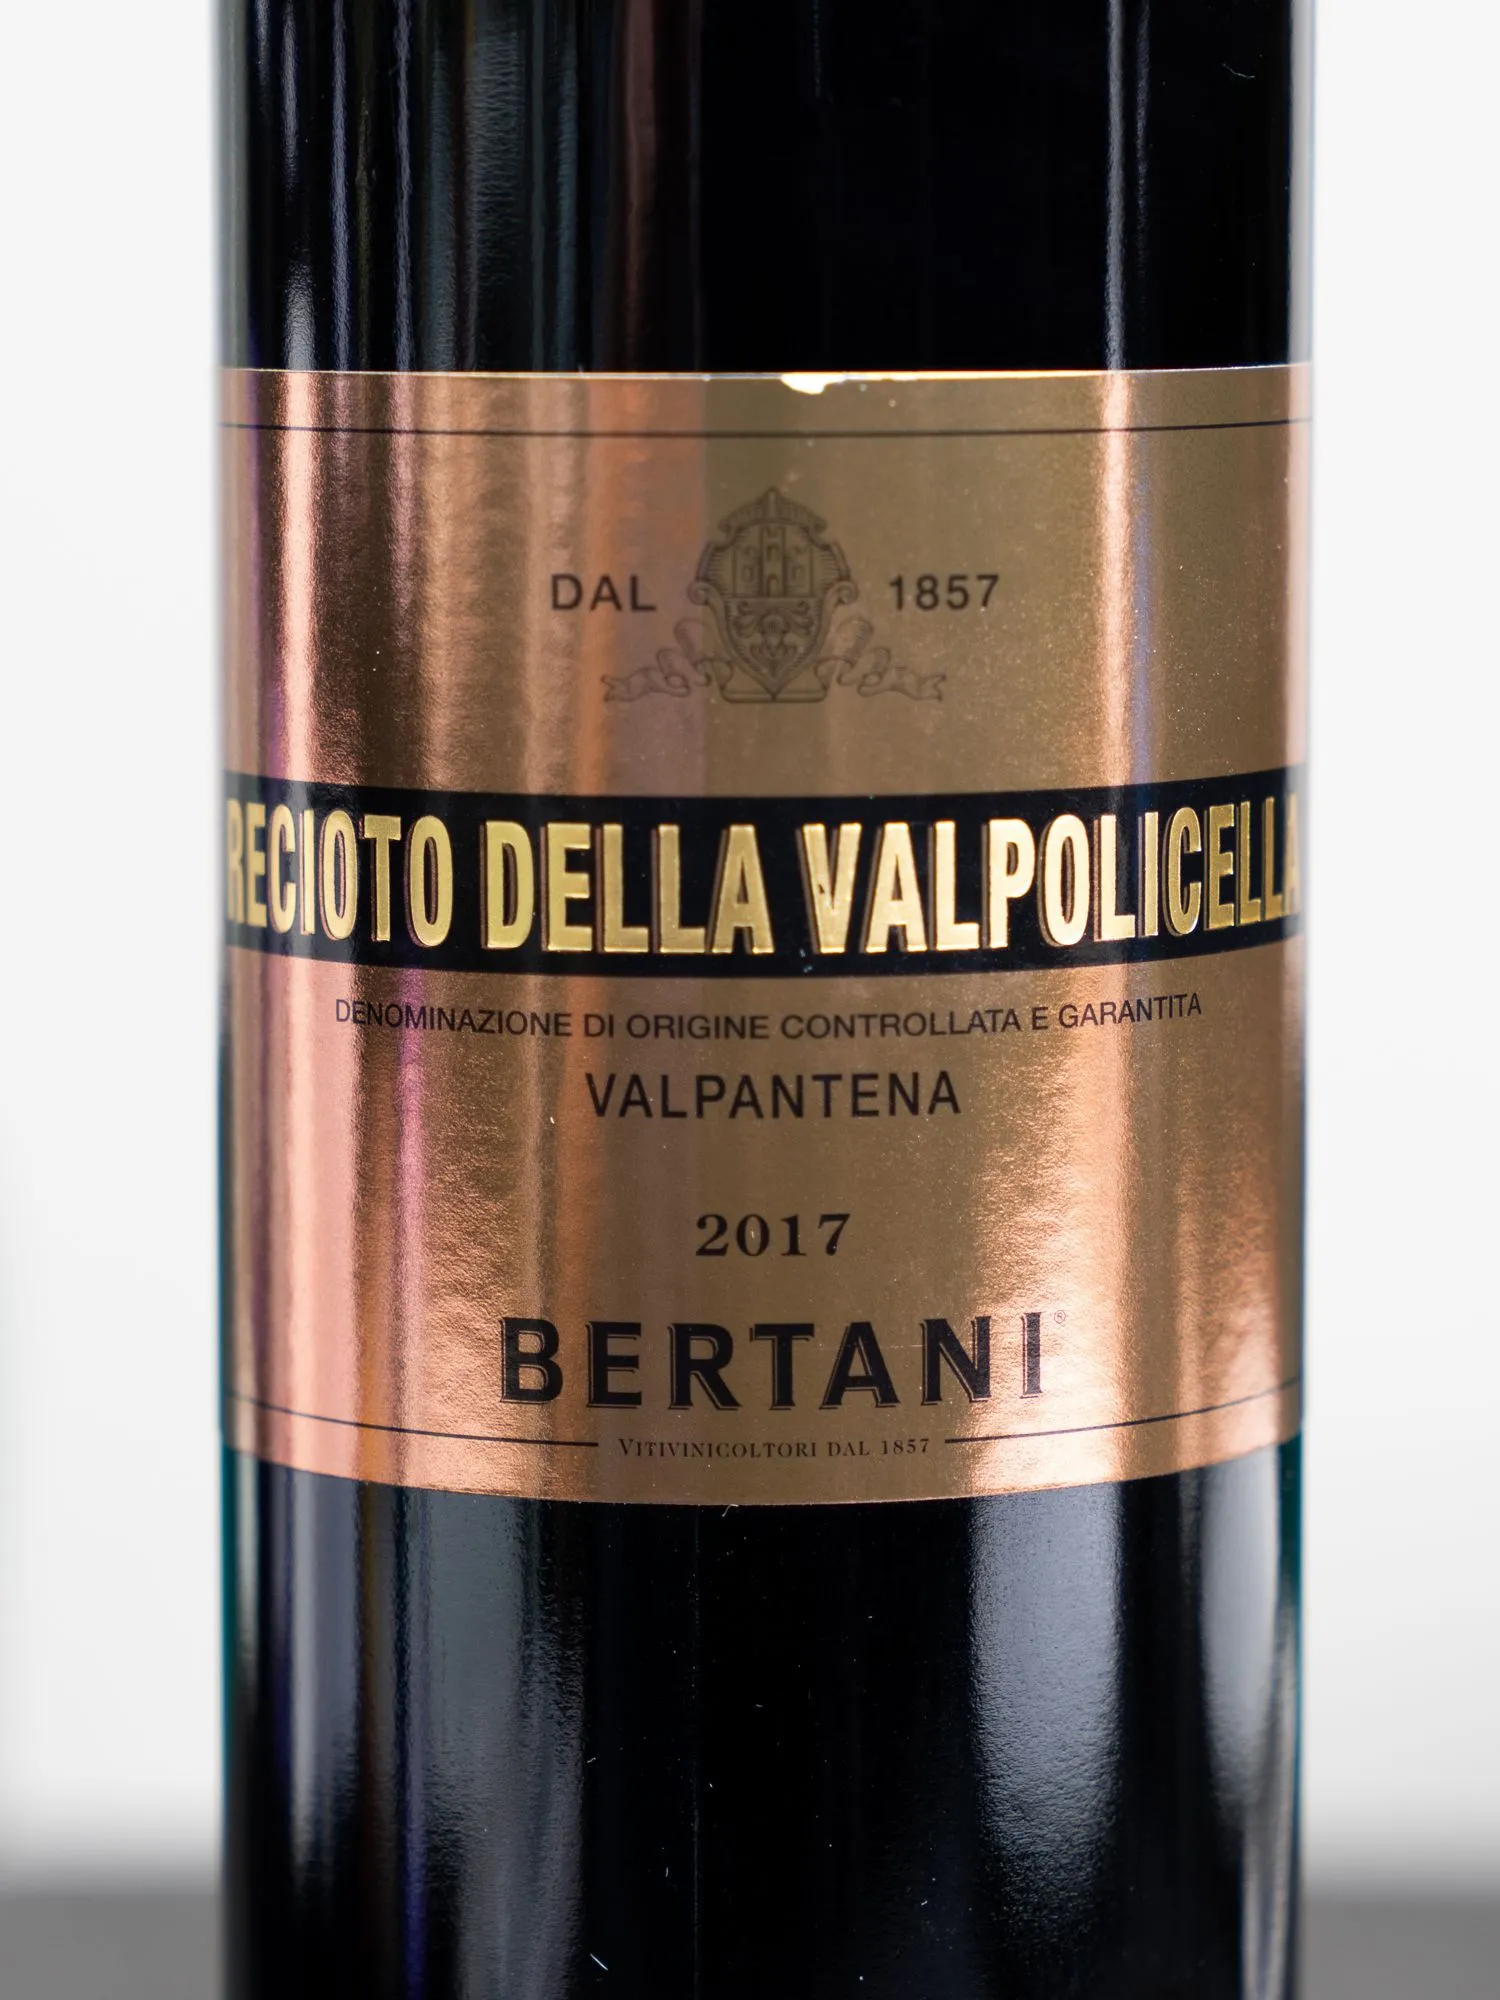 Вино Bertani Recioto Della Valpolicella Valpantena / Речото делла Вальполичелла Вальпантена